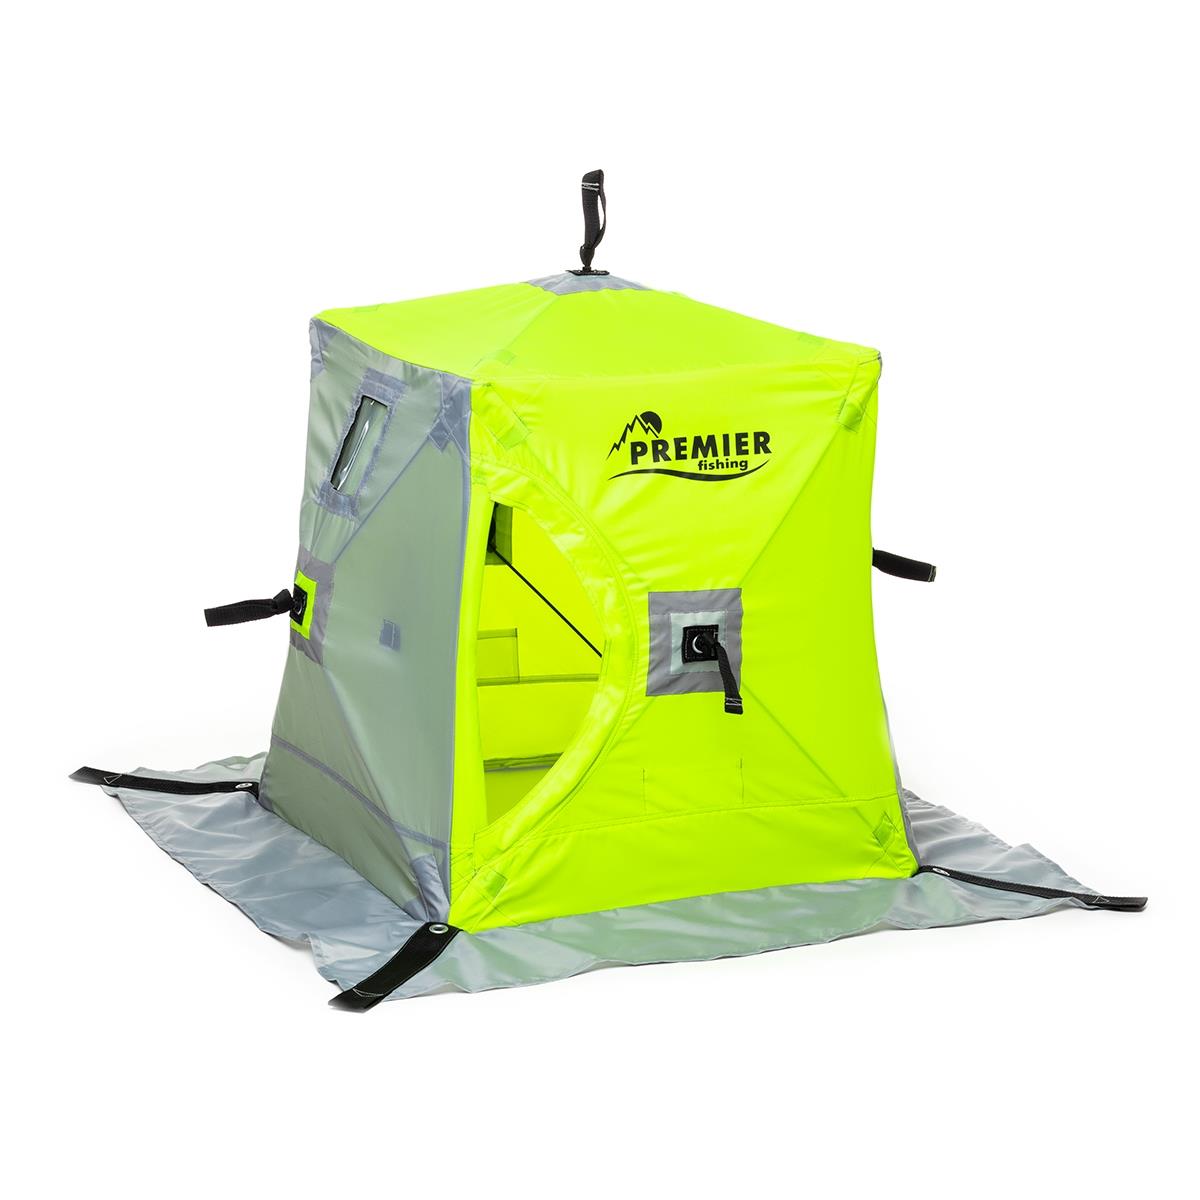 Мини палатка yellow lumi/gray Premier Fishing палатка игровая с туннелем 272х92х96 см тм наша игрушка